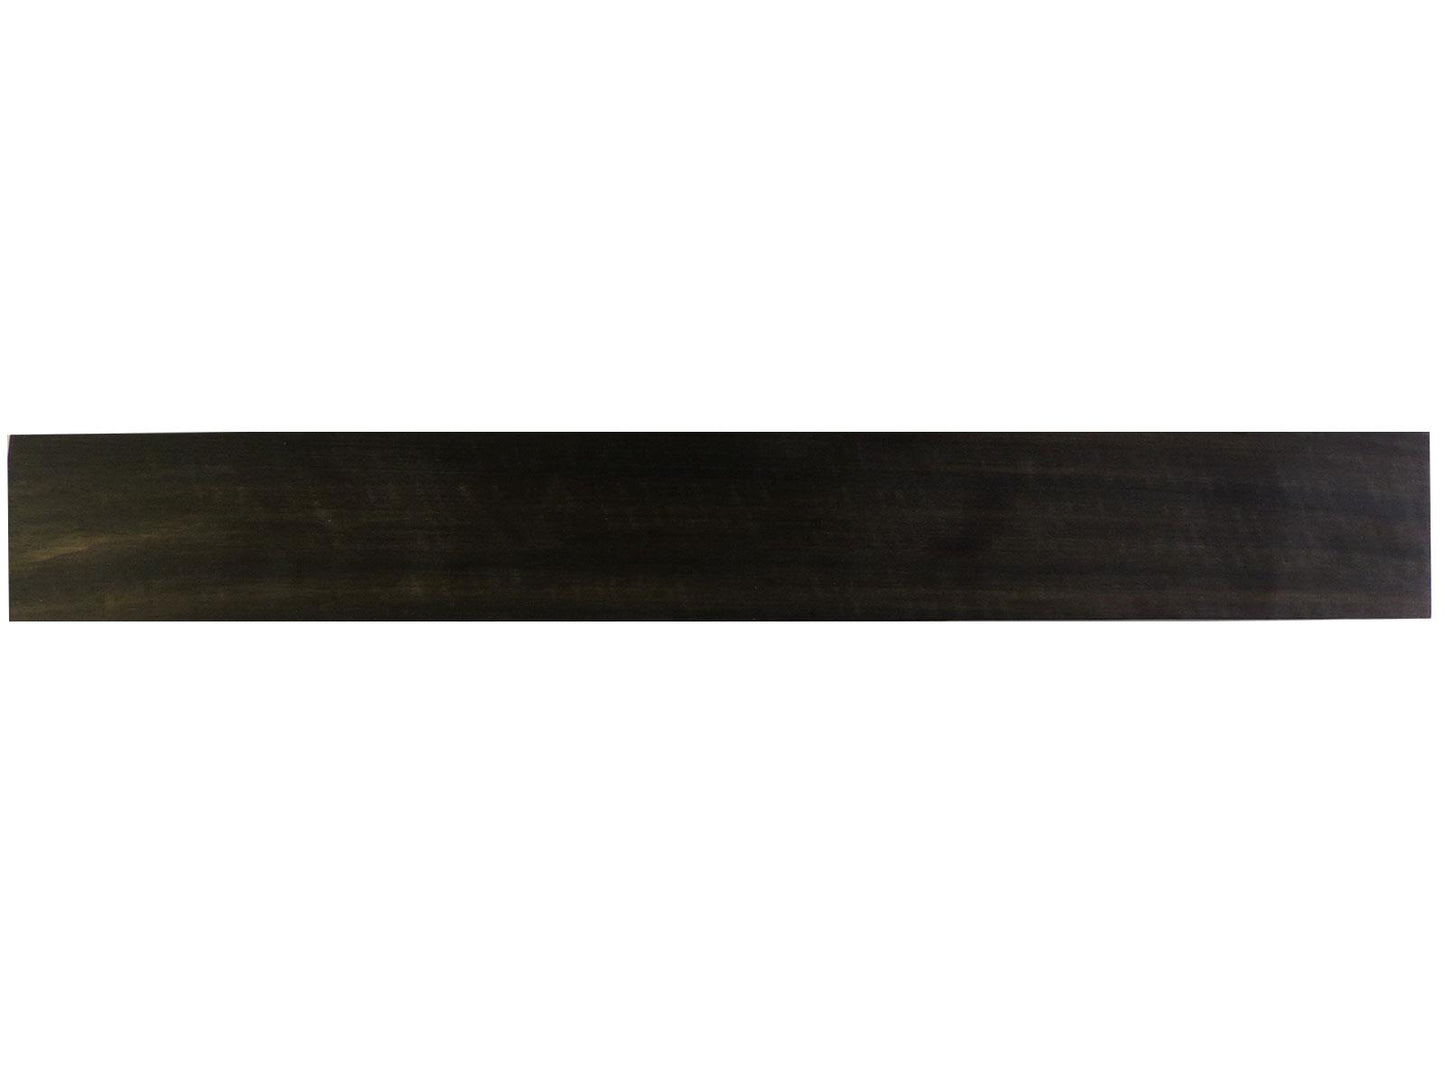 Turners' Mill B Grade Ebony Guitar Fingerboard Blank (Unslotted) - 530x70x6mm (20.9x2.76x0.24")